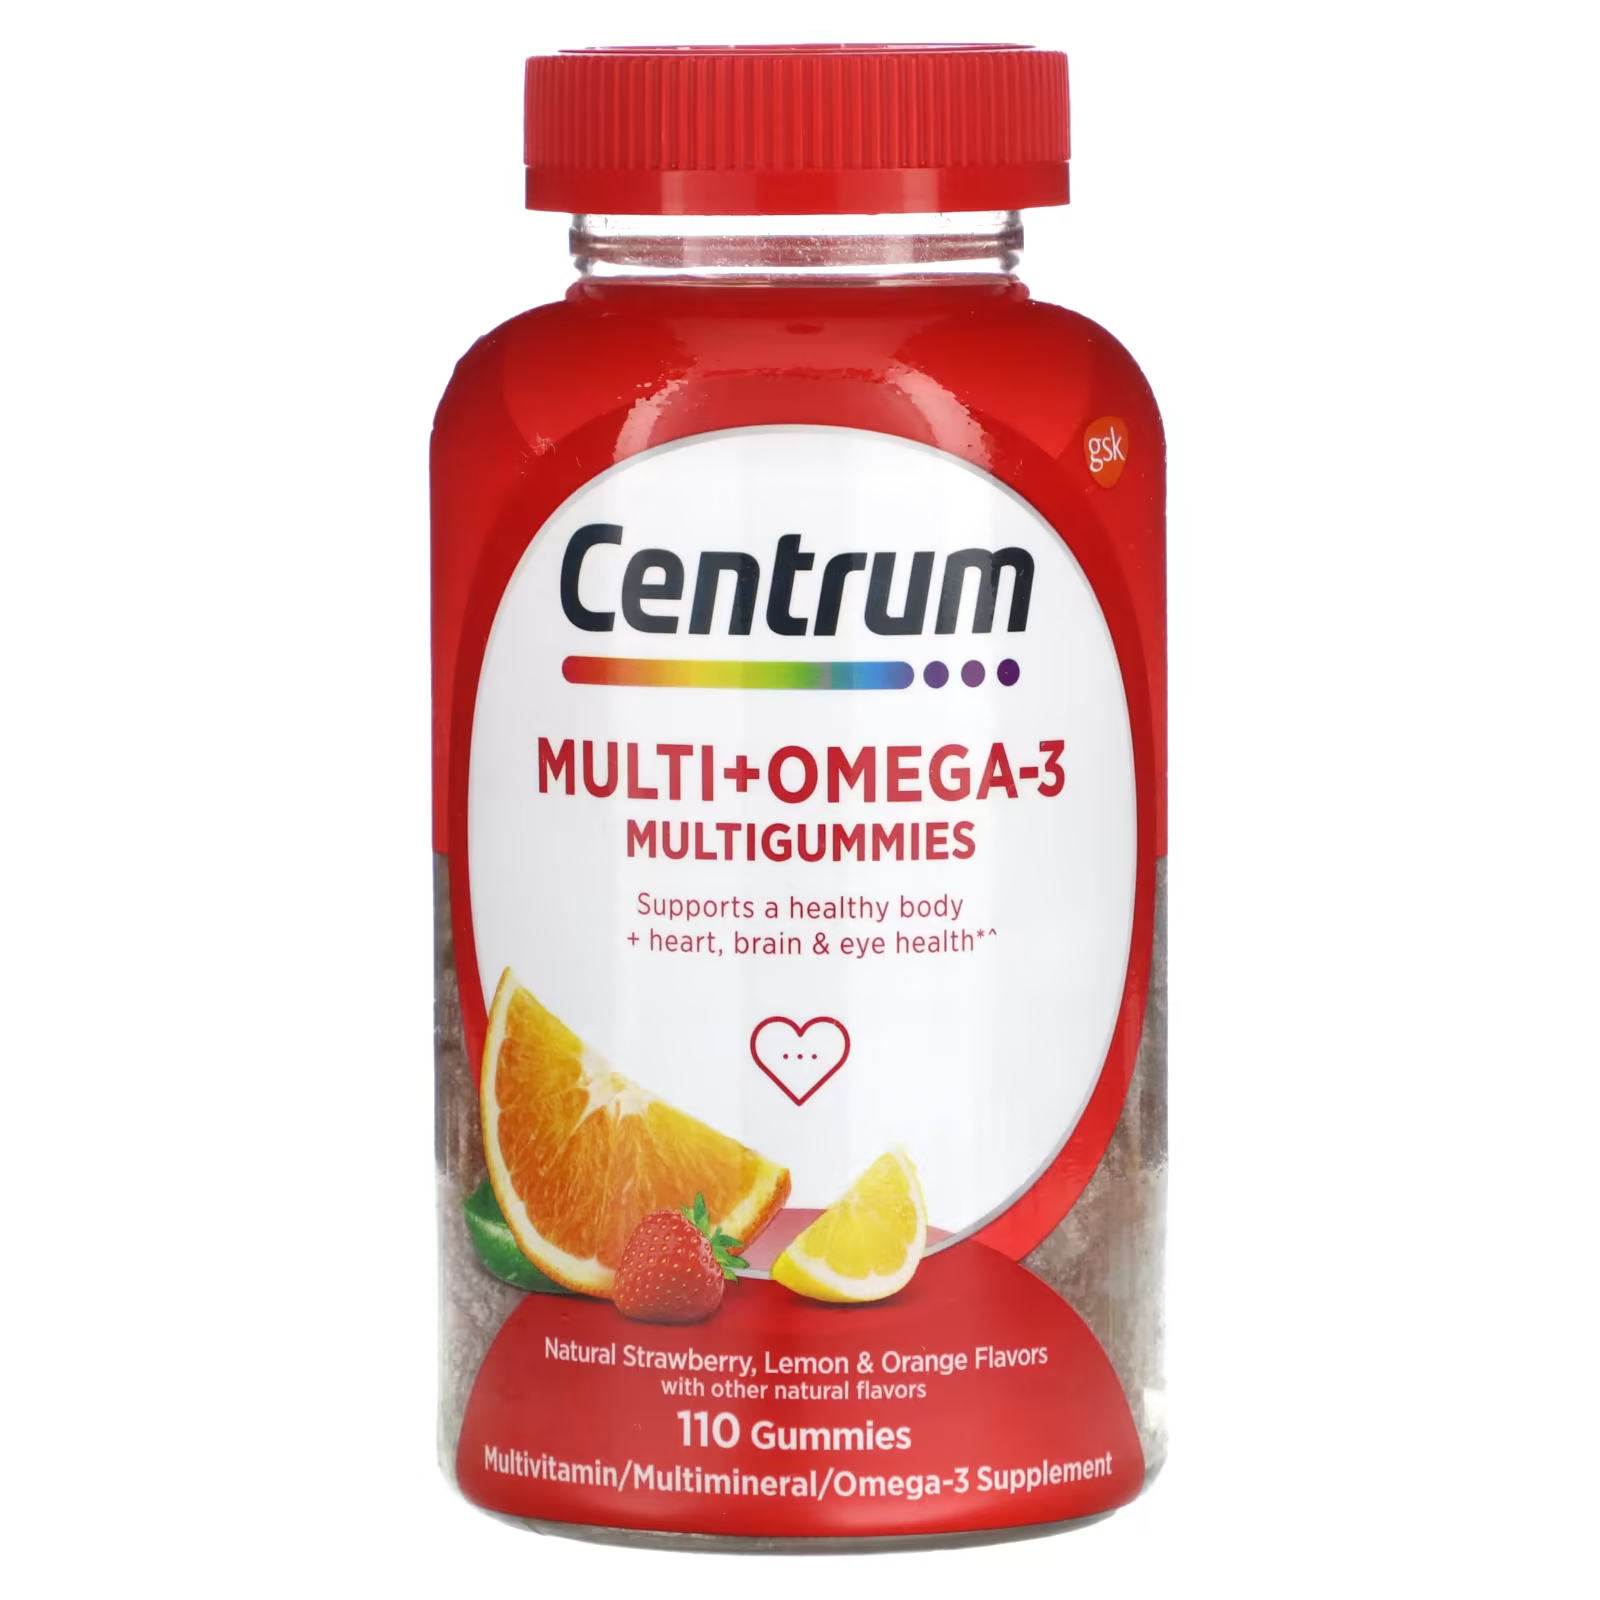 Мультивитаминная добавка Centrum Multi + Omega-3 Multigummies клубника, лимон и апельсин, 110 жевательных конфет